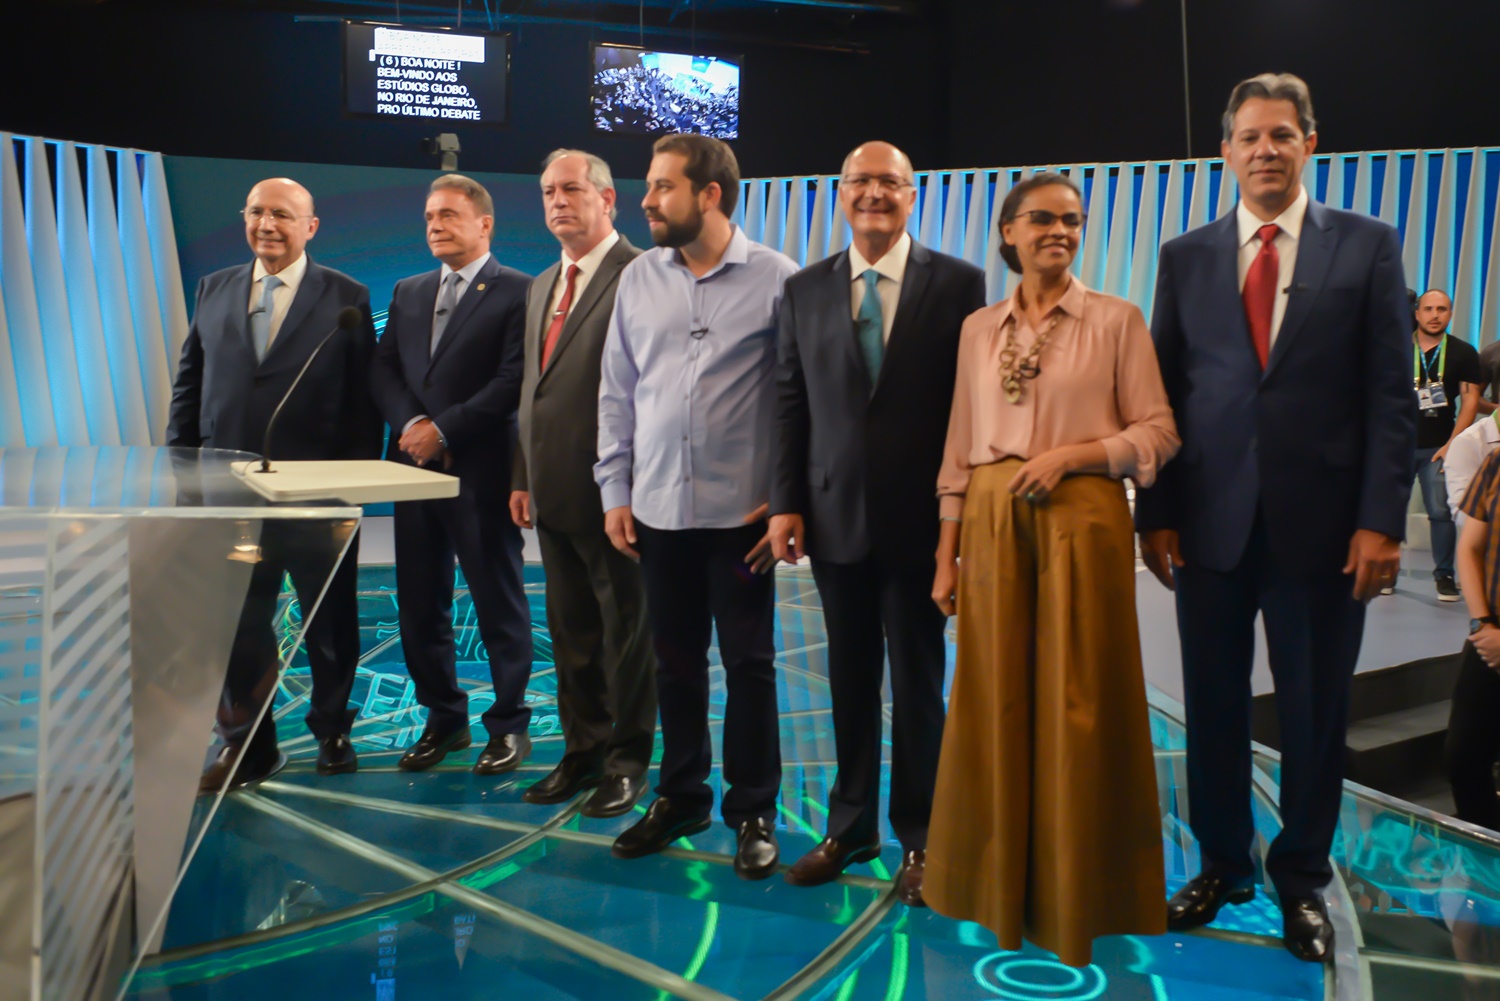 Presidenciáveis durante debate na Tv Globo